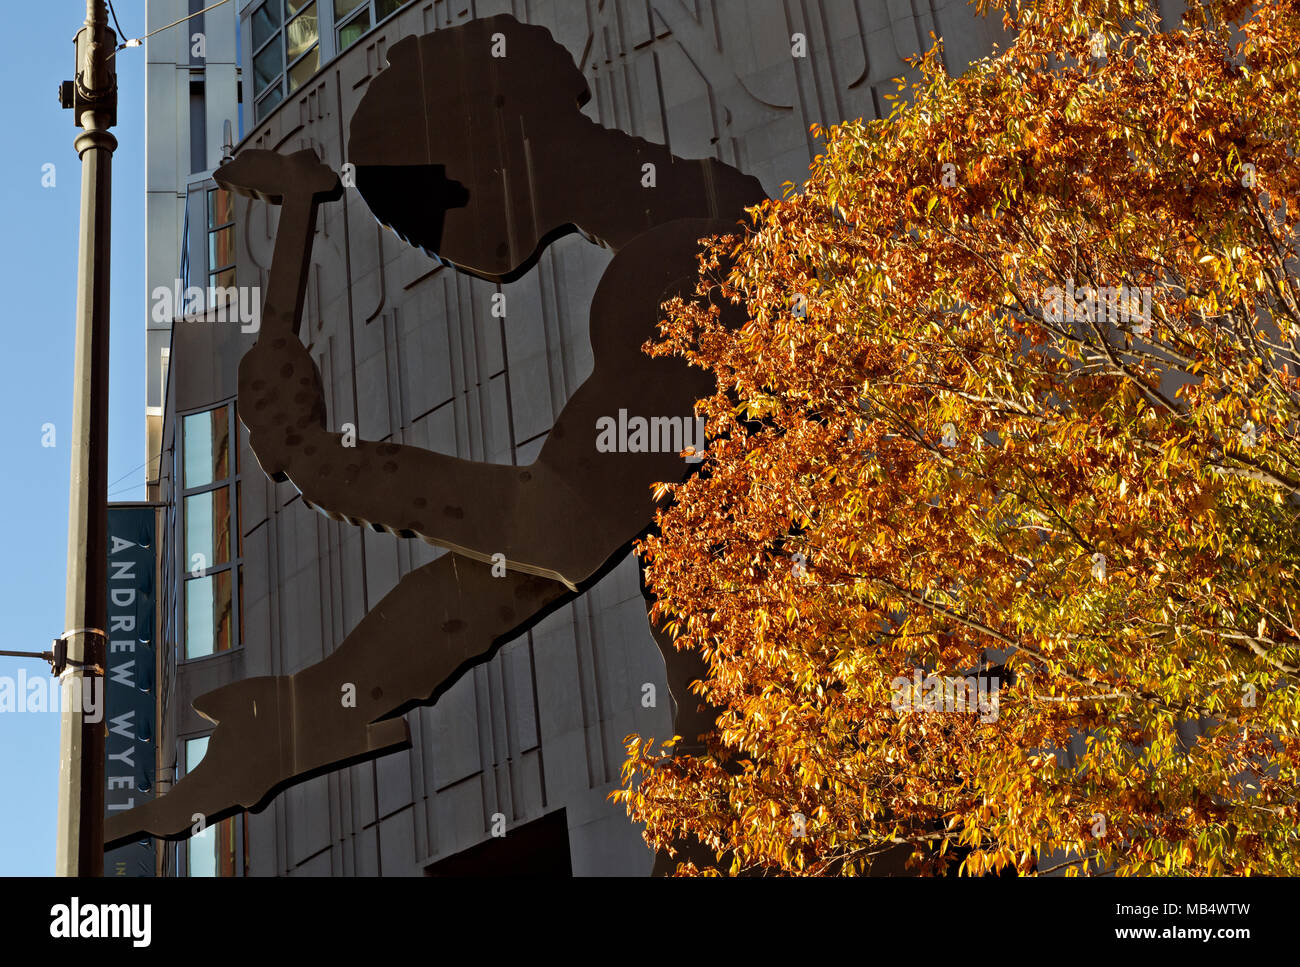 WA15047-00...WASHINGTON - l'imponente scultura dell'uomo martellante situata all'esterno del Seattle Art Museum nel centro di Seattle. 2017 Foto Stock